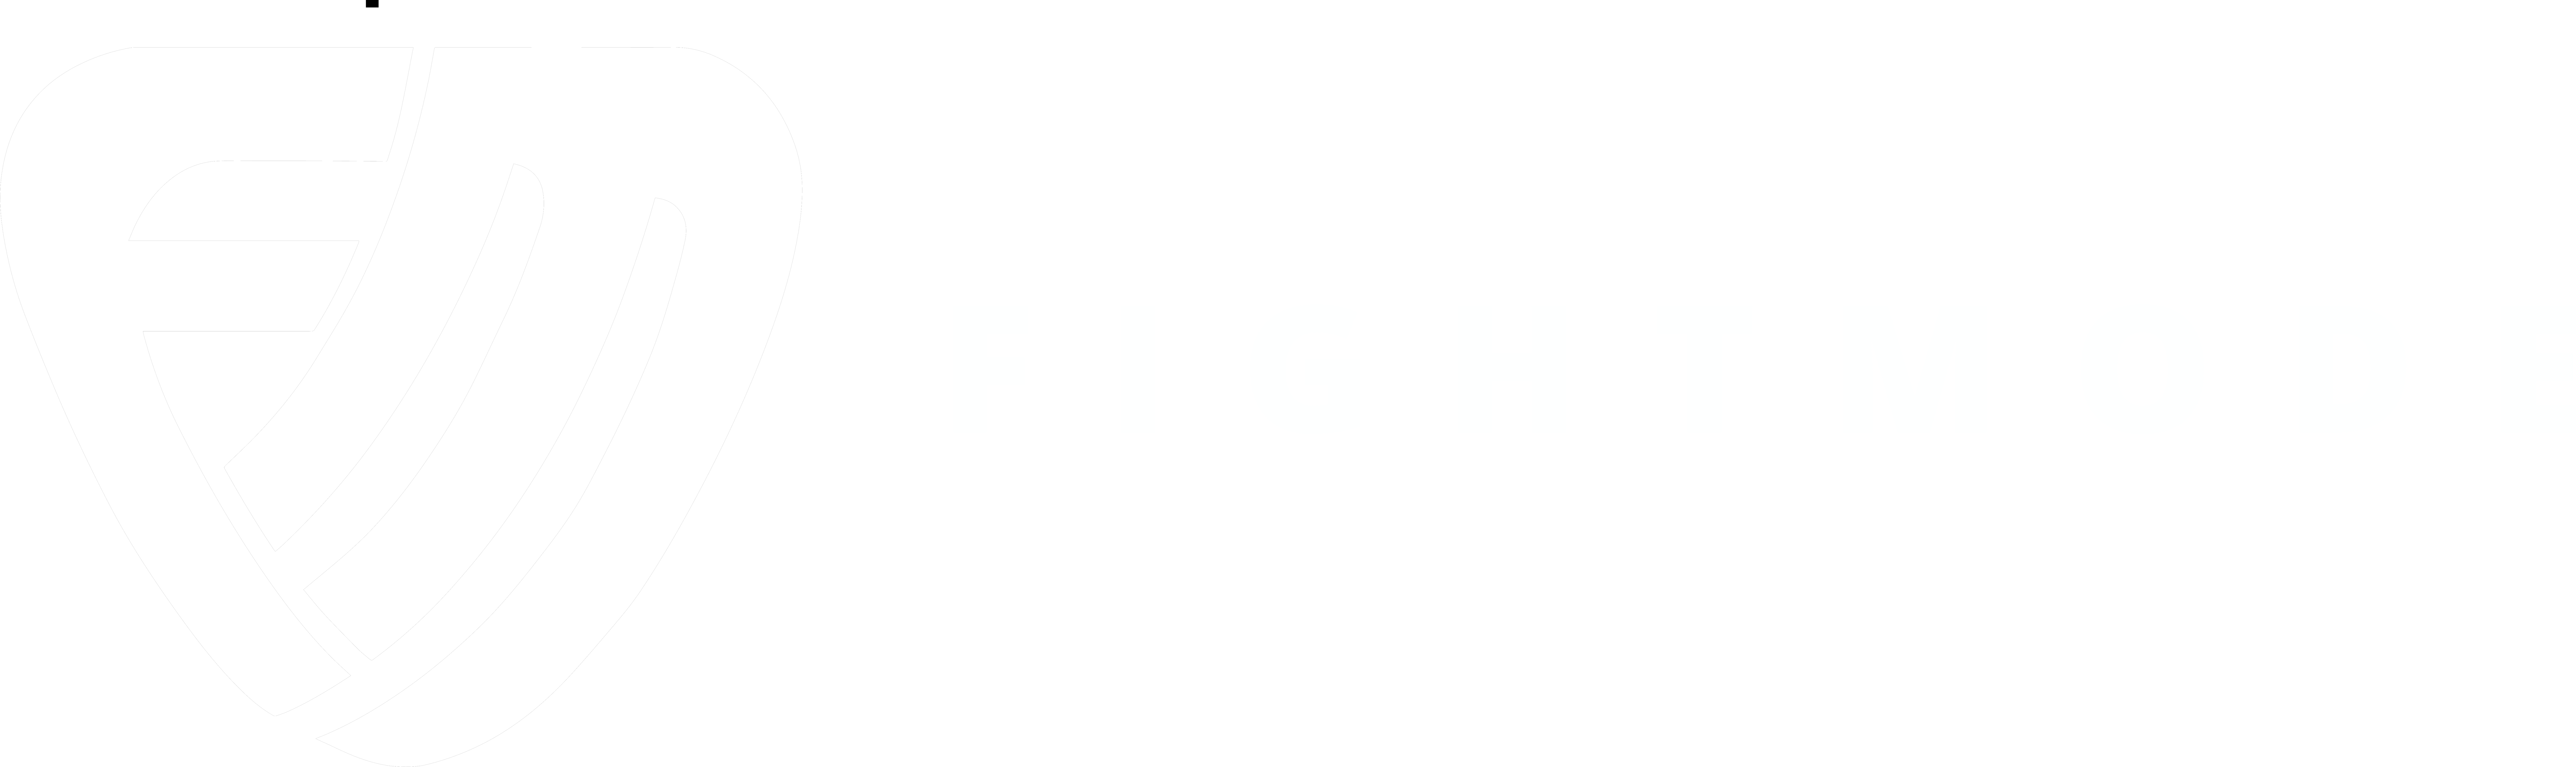 Fightmode Sportswear Wort-Bild-Marke-Logo